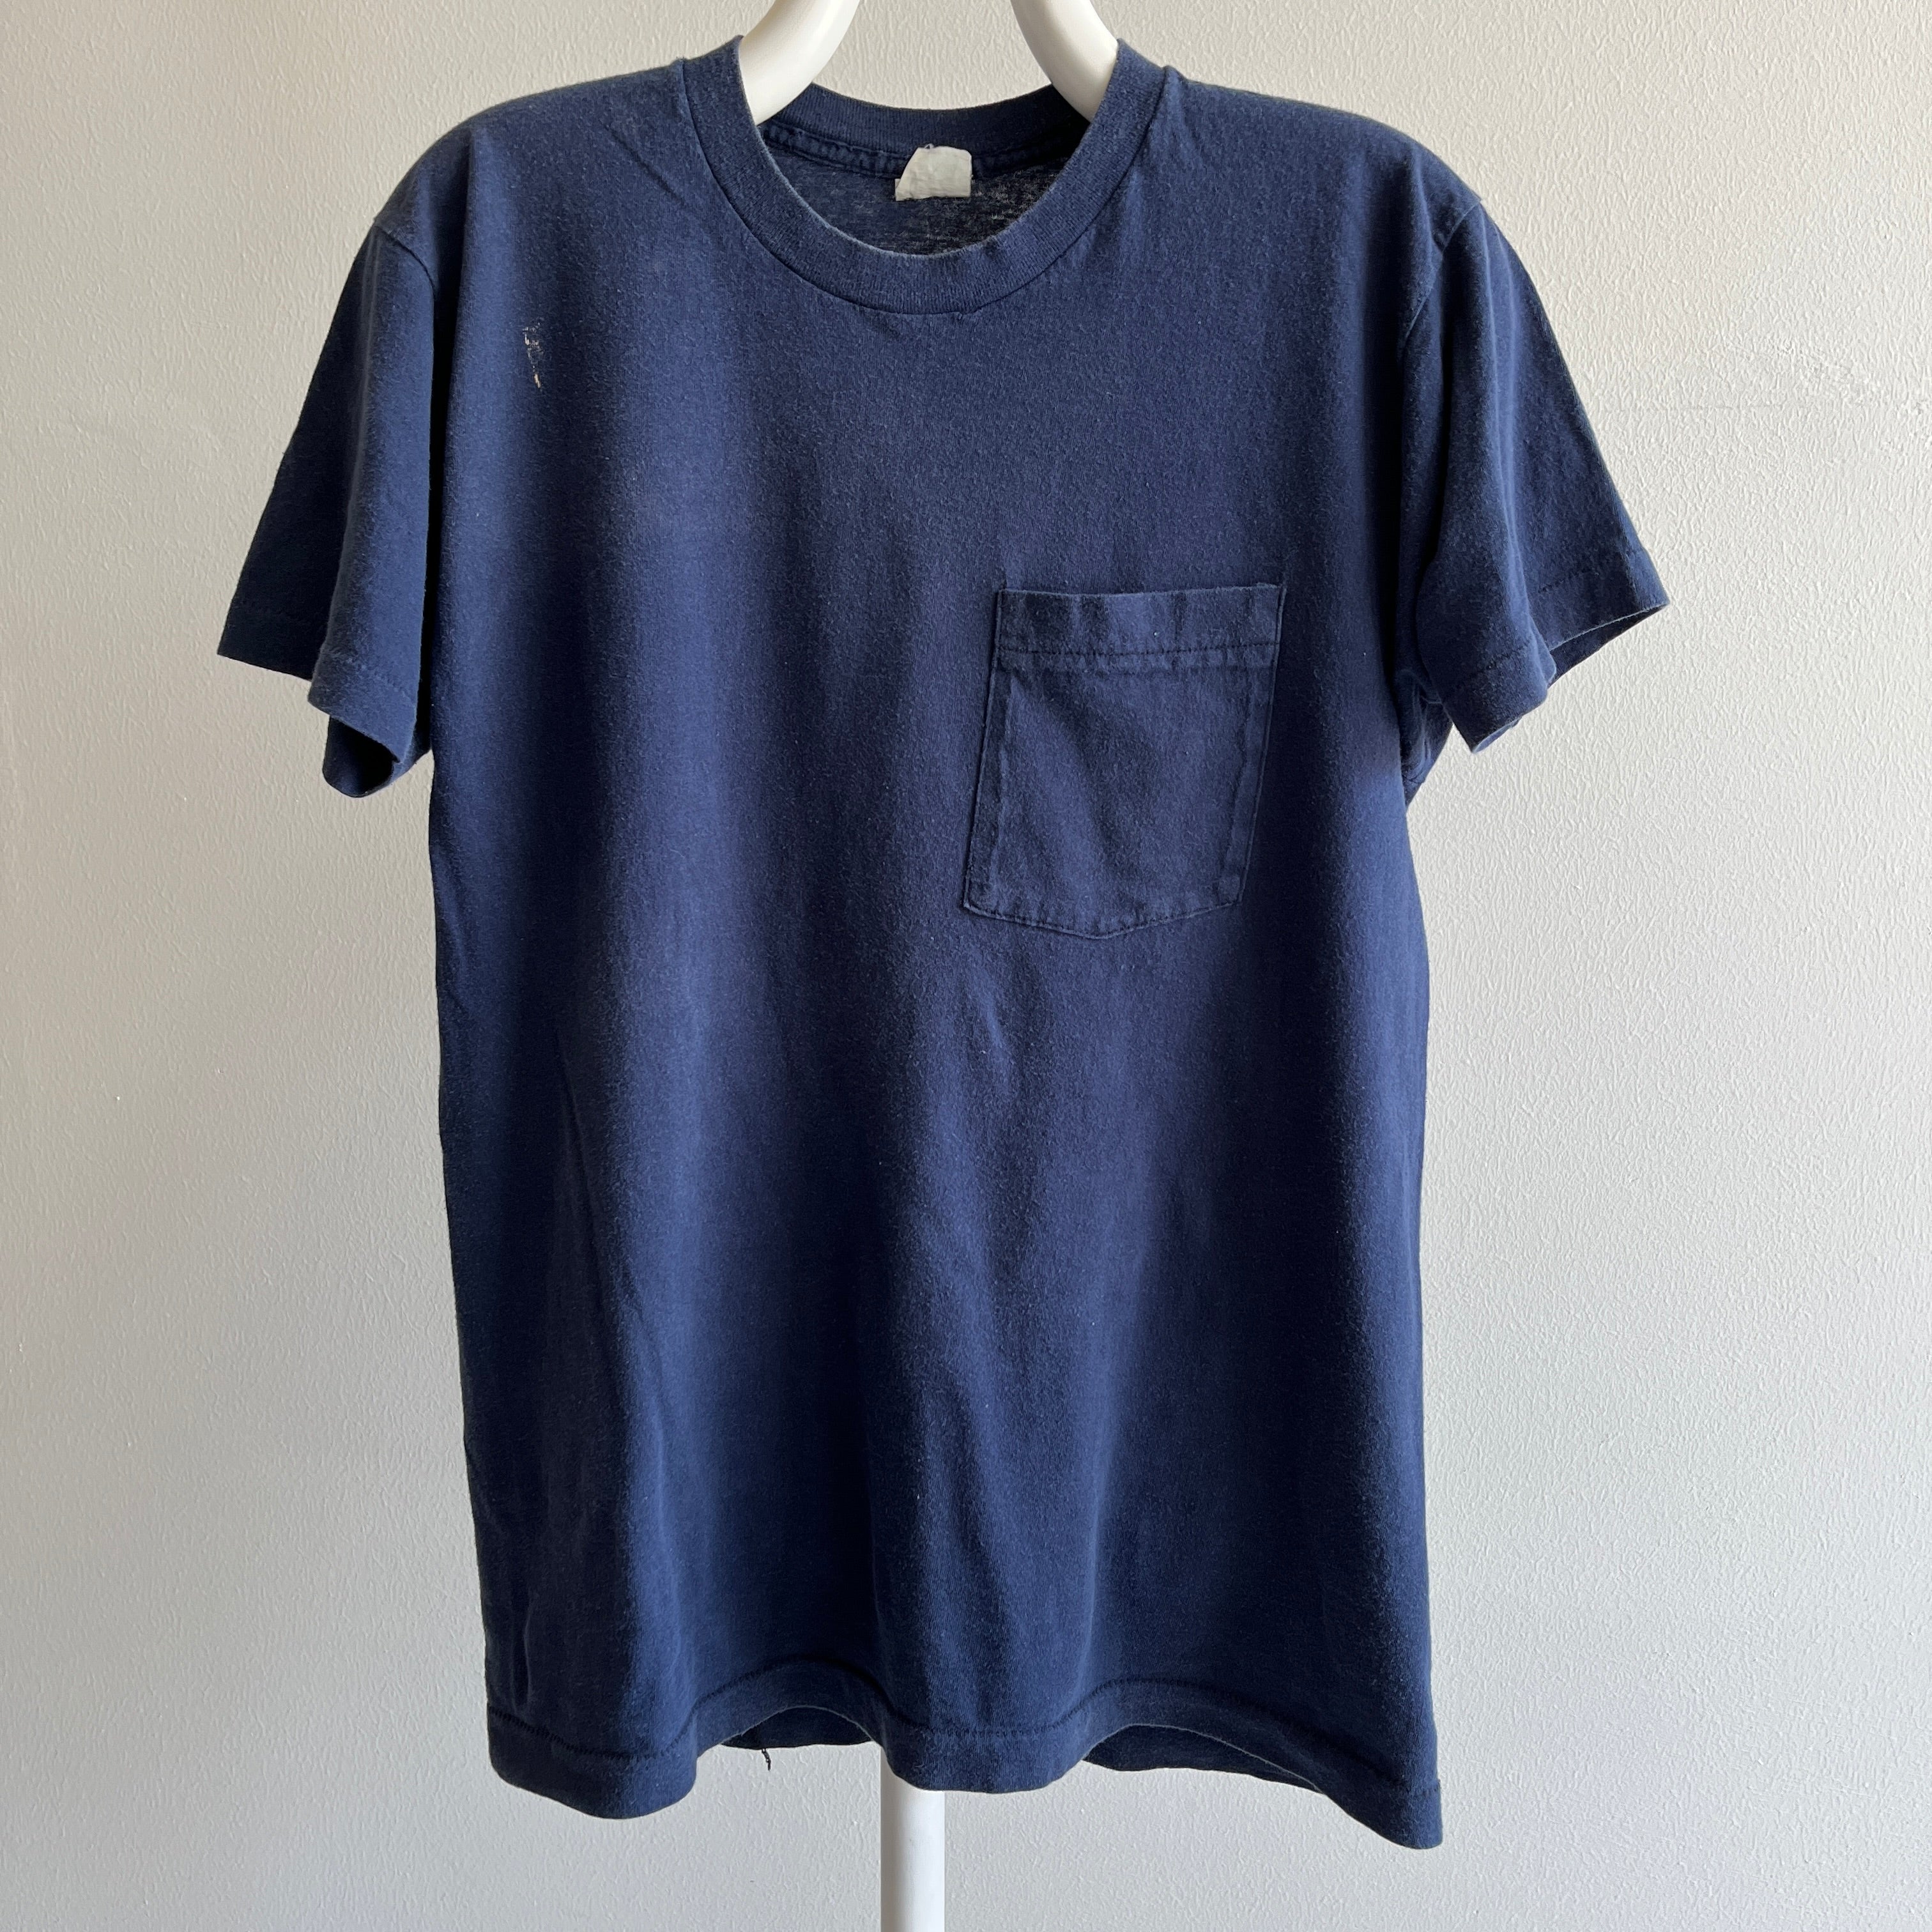 T-shirt de poche bleu marine vierge des années 1980 par FOTL